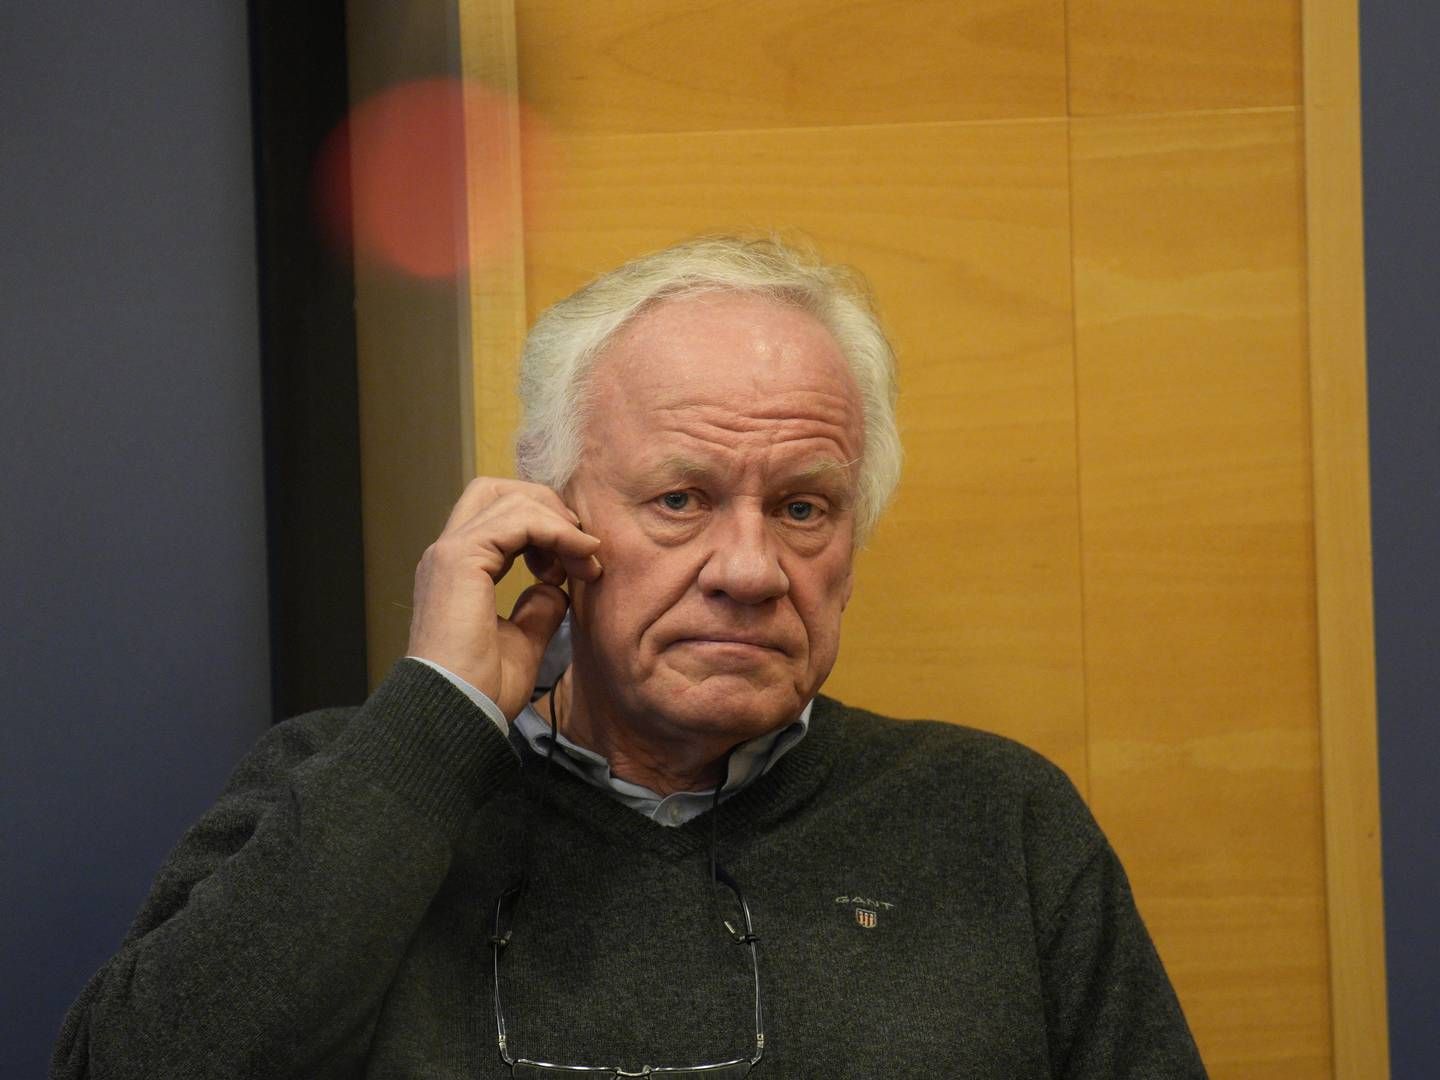 KLAR TALE: Bistandsadvokat Sigurd J. Klomsæt mener Mehl må trekke seg etter hva som kommer frem i evalueringsrapporten etter Oslo-skytingen. | Foto: Jan Kåre Ness/NTB